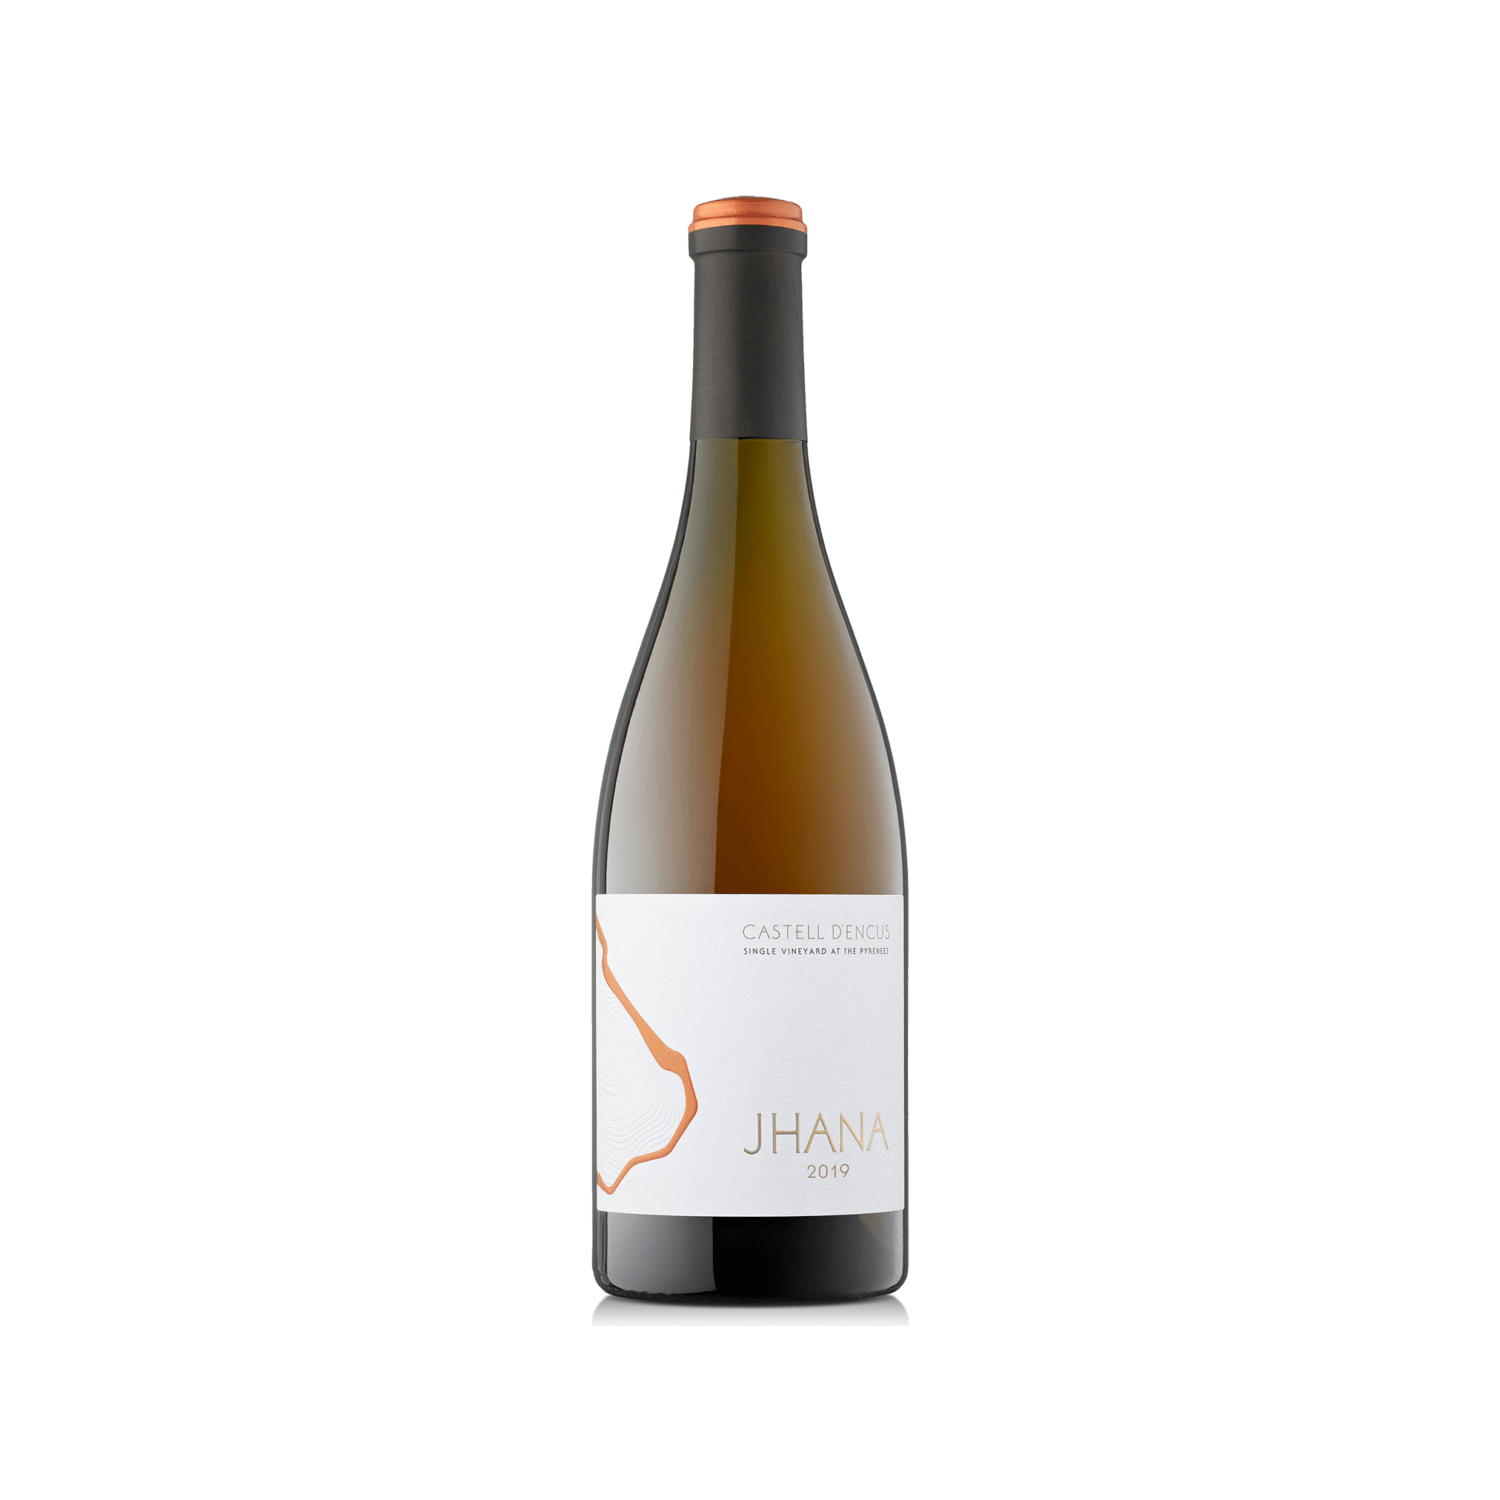 Ampolla d'estudi del vi JHANA 2019